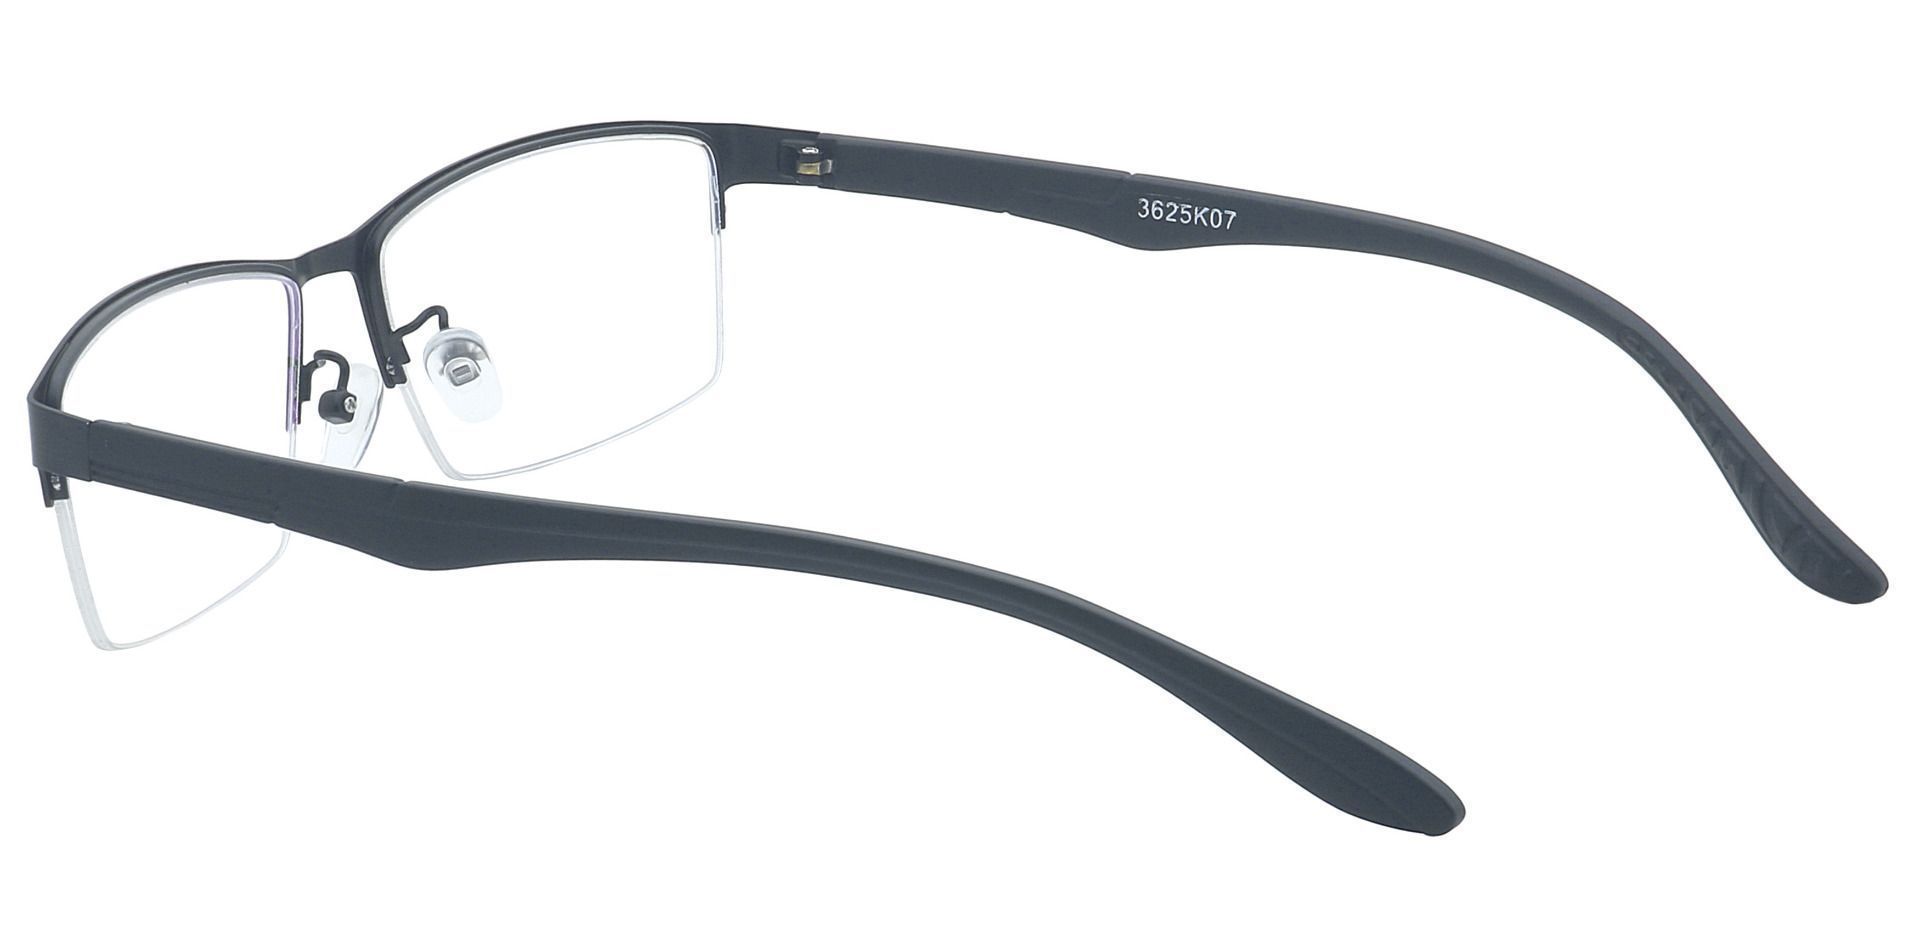 Ruben Rectangle Eyeglasses Frame - Black